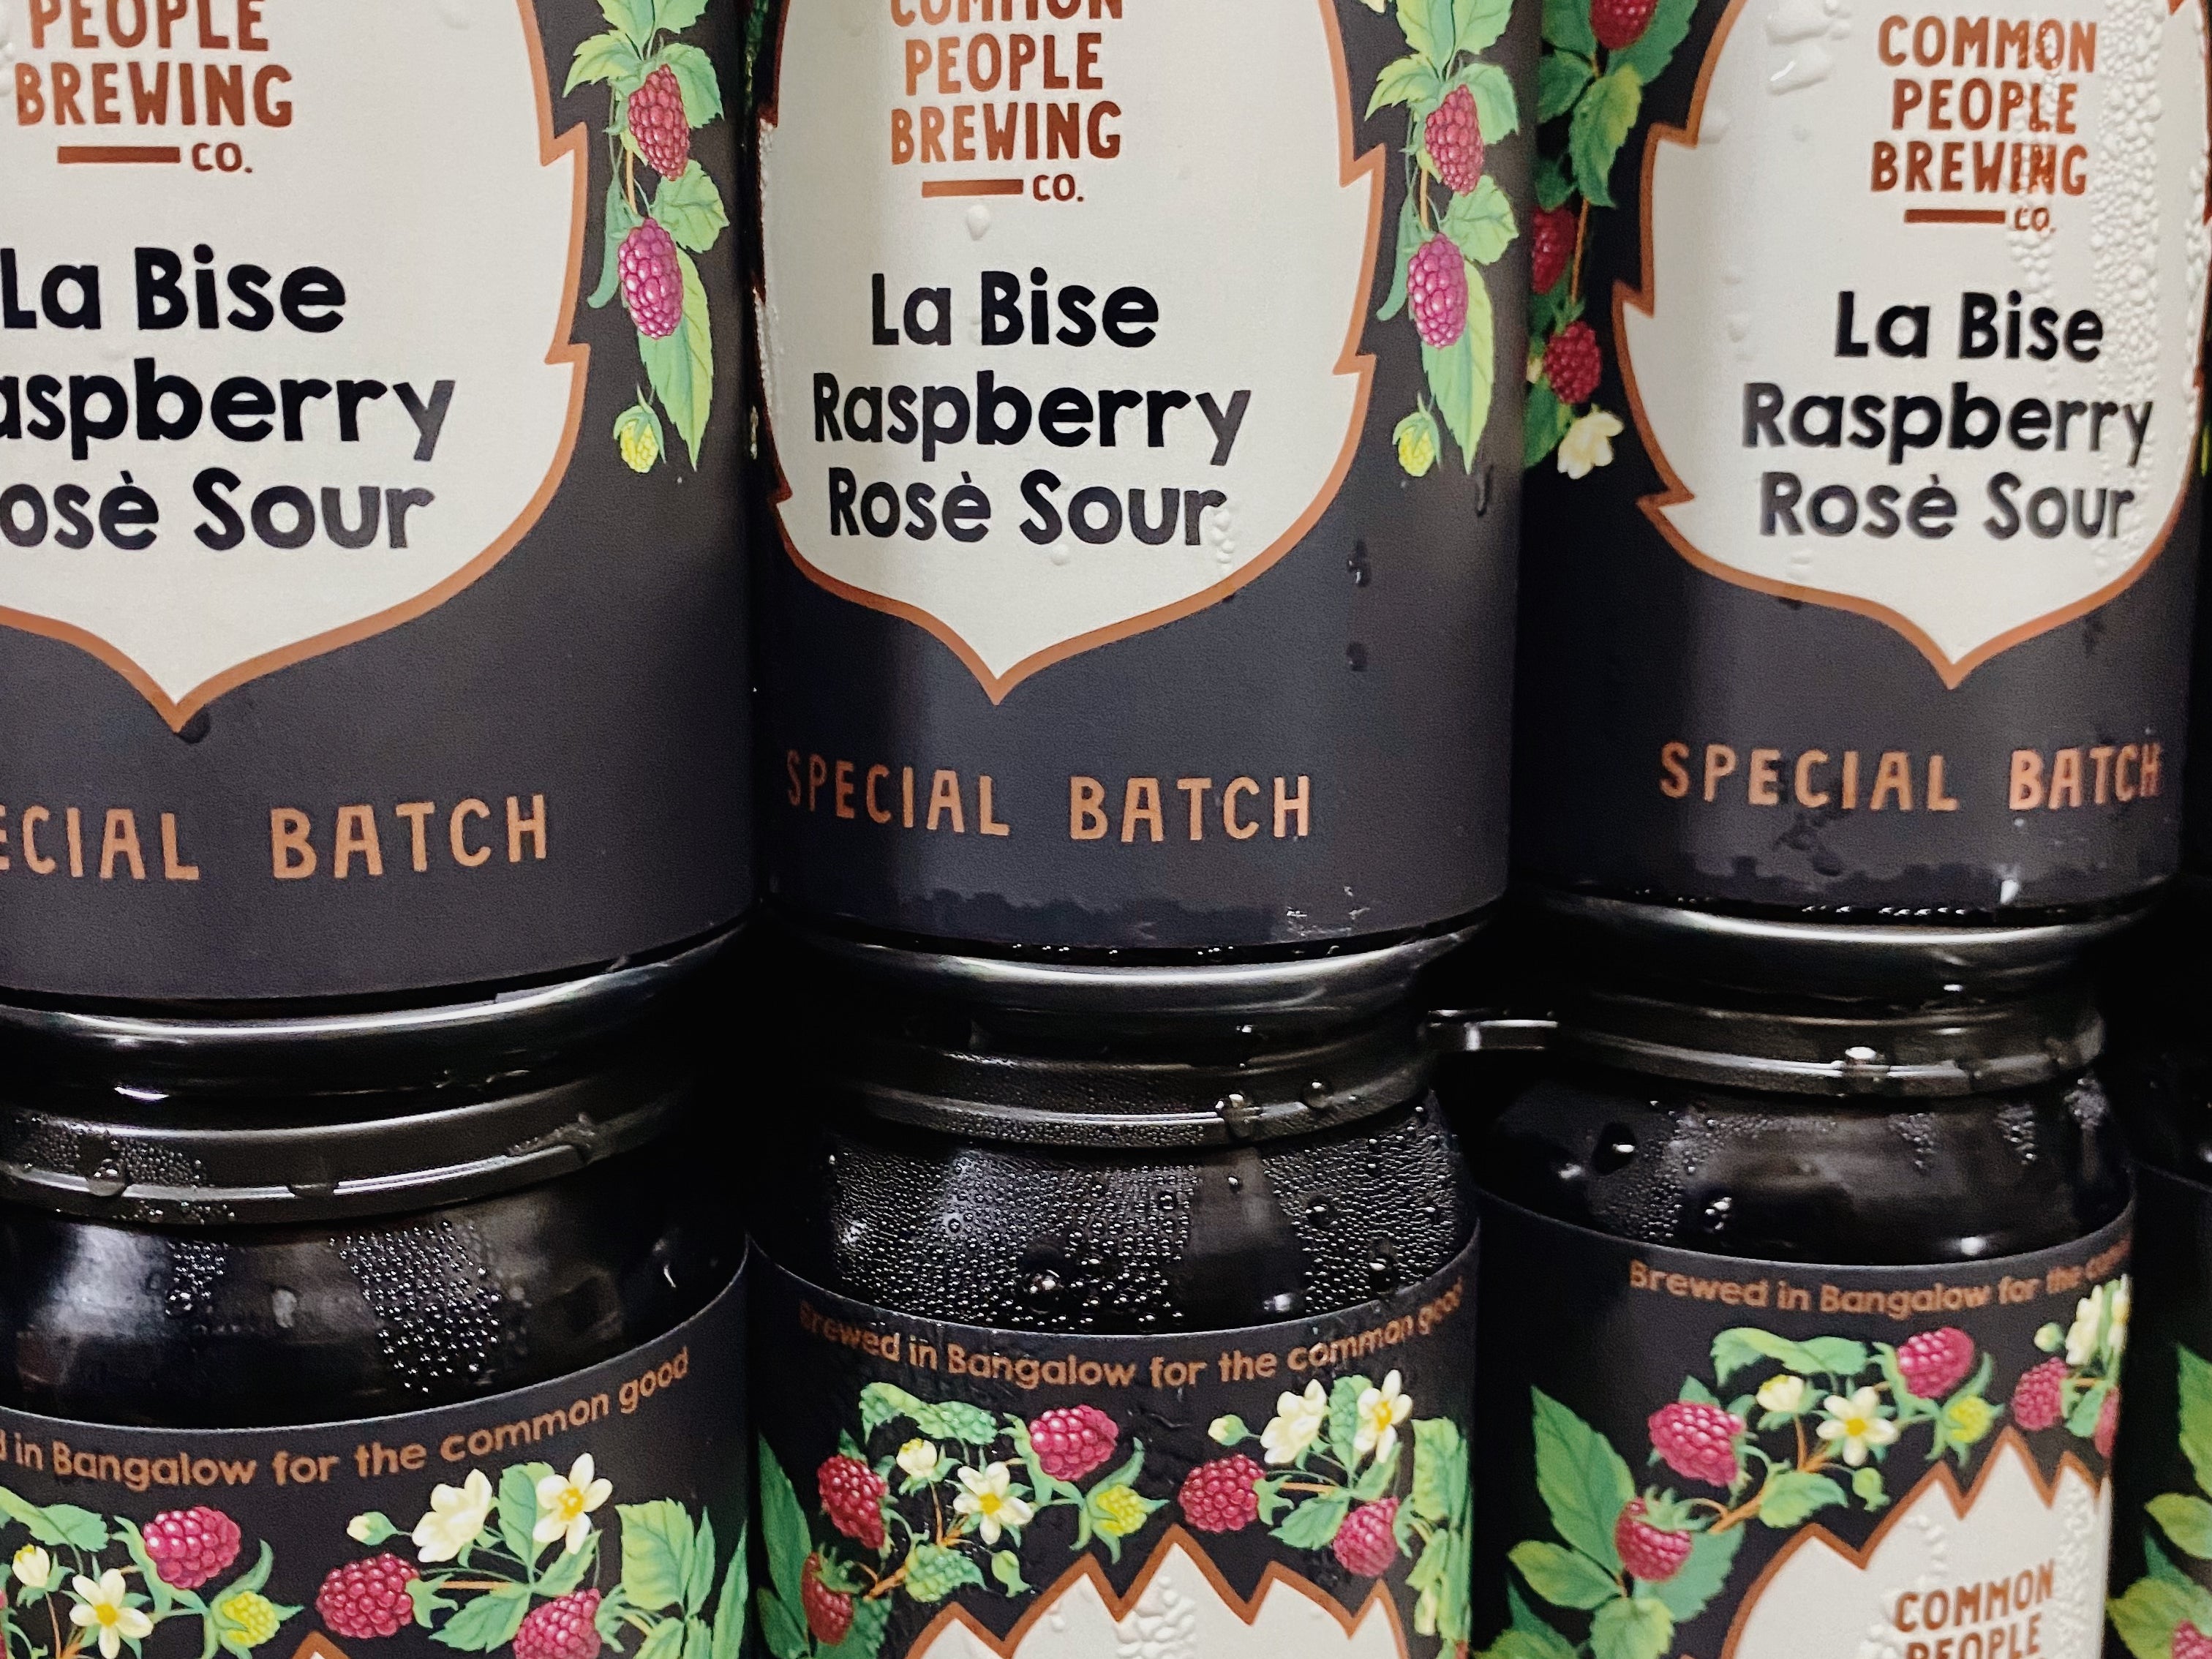 NEW BREW: La Bise Raspberry Rosé Sour 4.5%